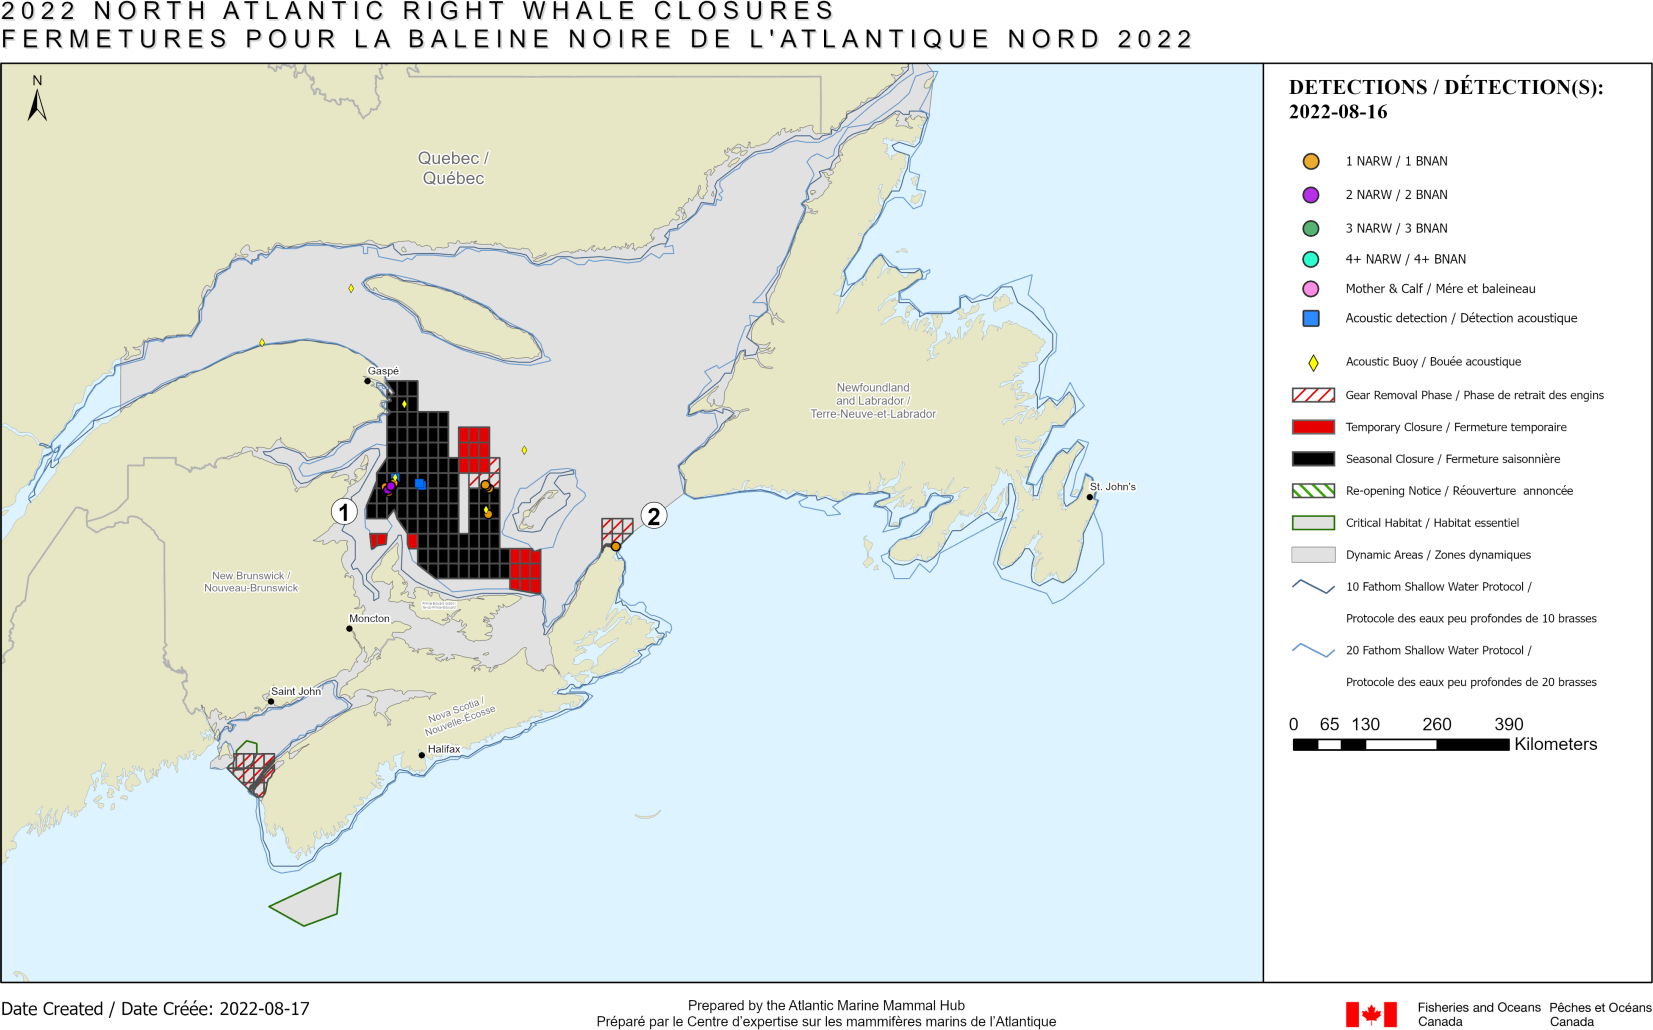 Carte illustrant tous les quadrilatères qui ouvrent à nouveau dans les eaux canadiennes en raison de détections précédentes de BNAN